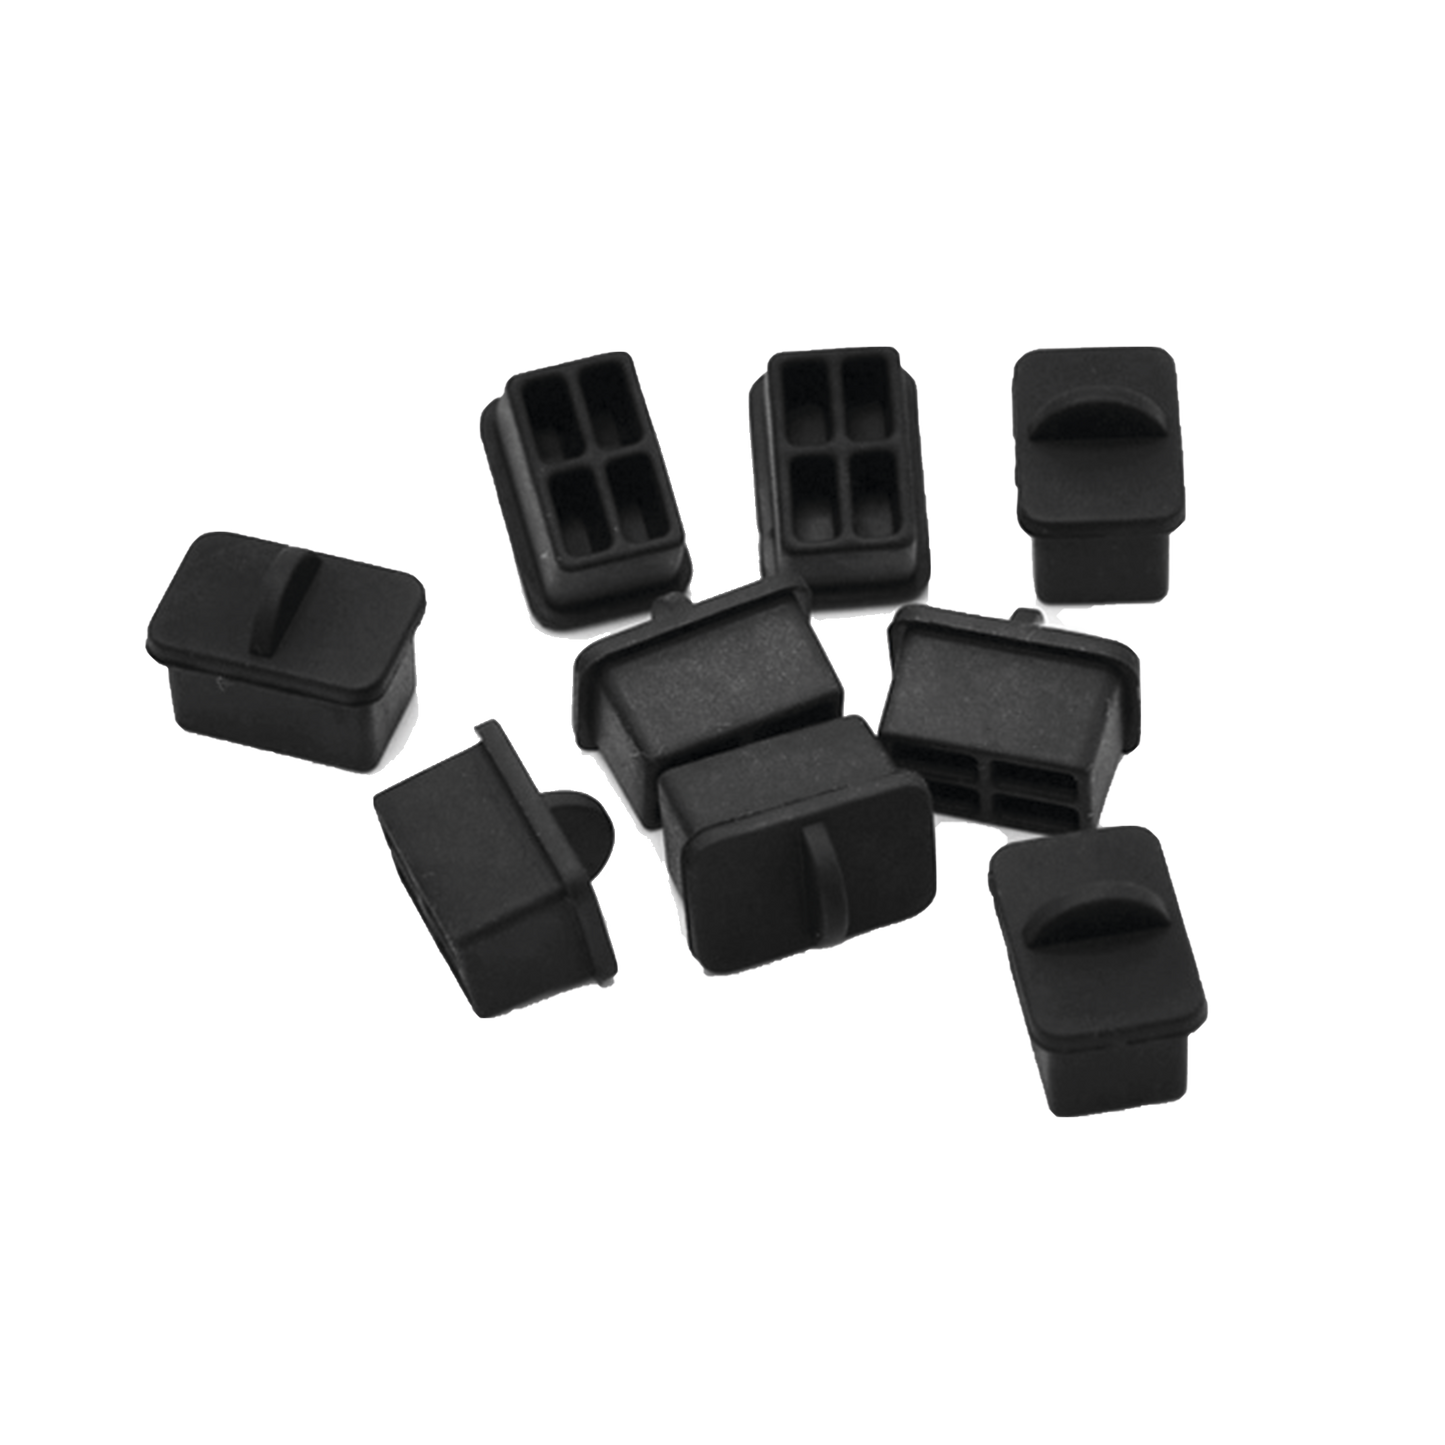 Bolsa con 25 piezas de protectores anti-polvo para puerto SFP, color negro